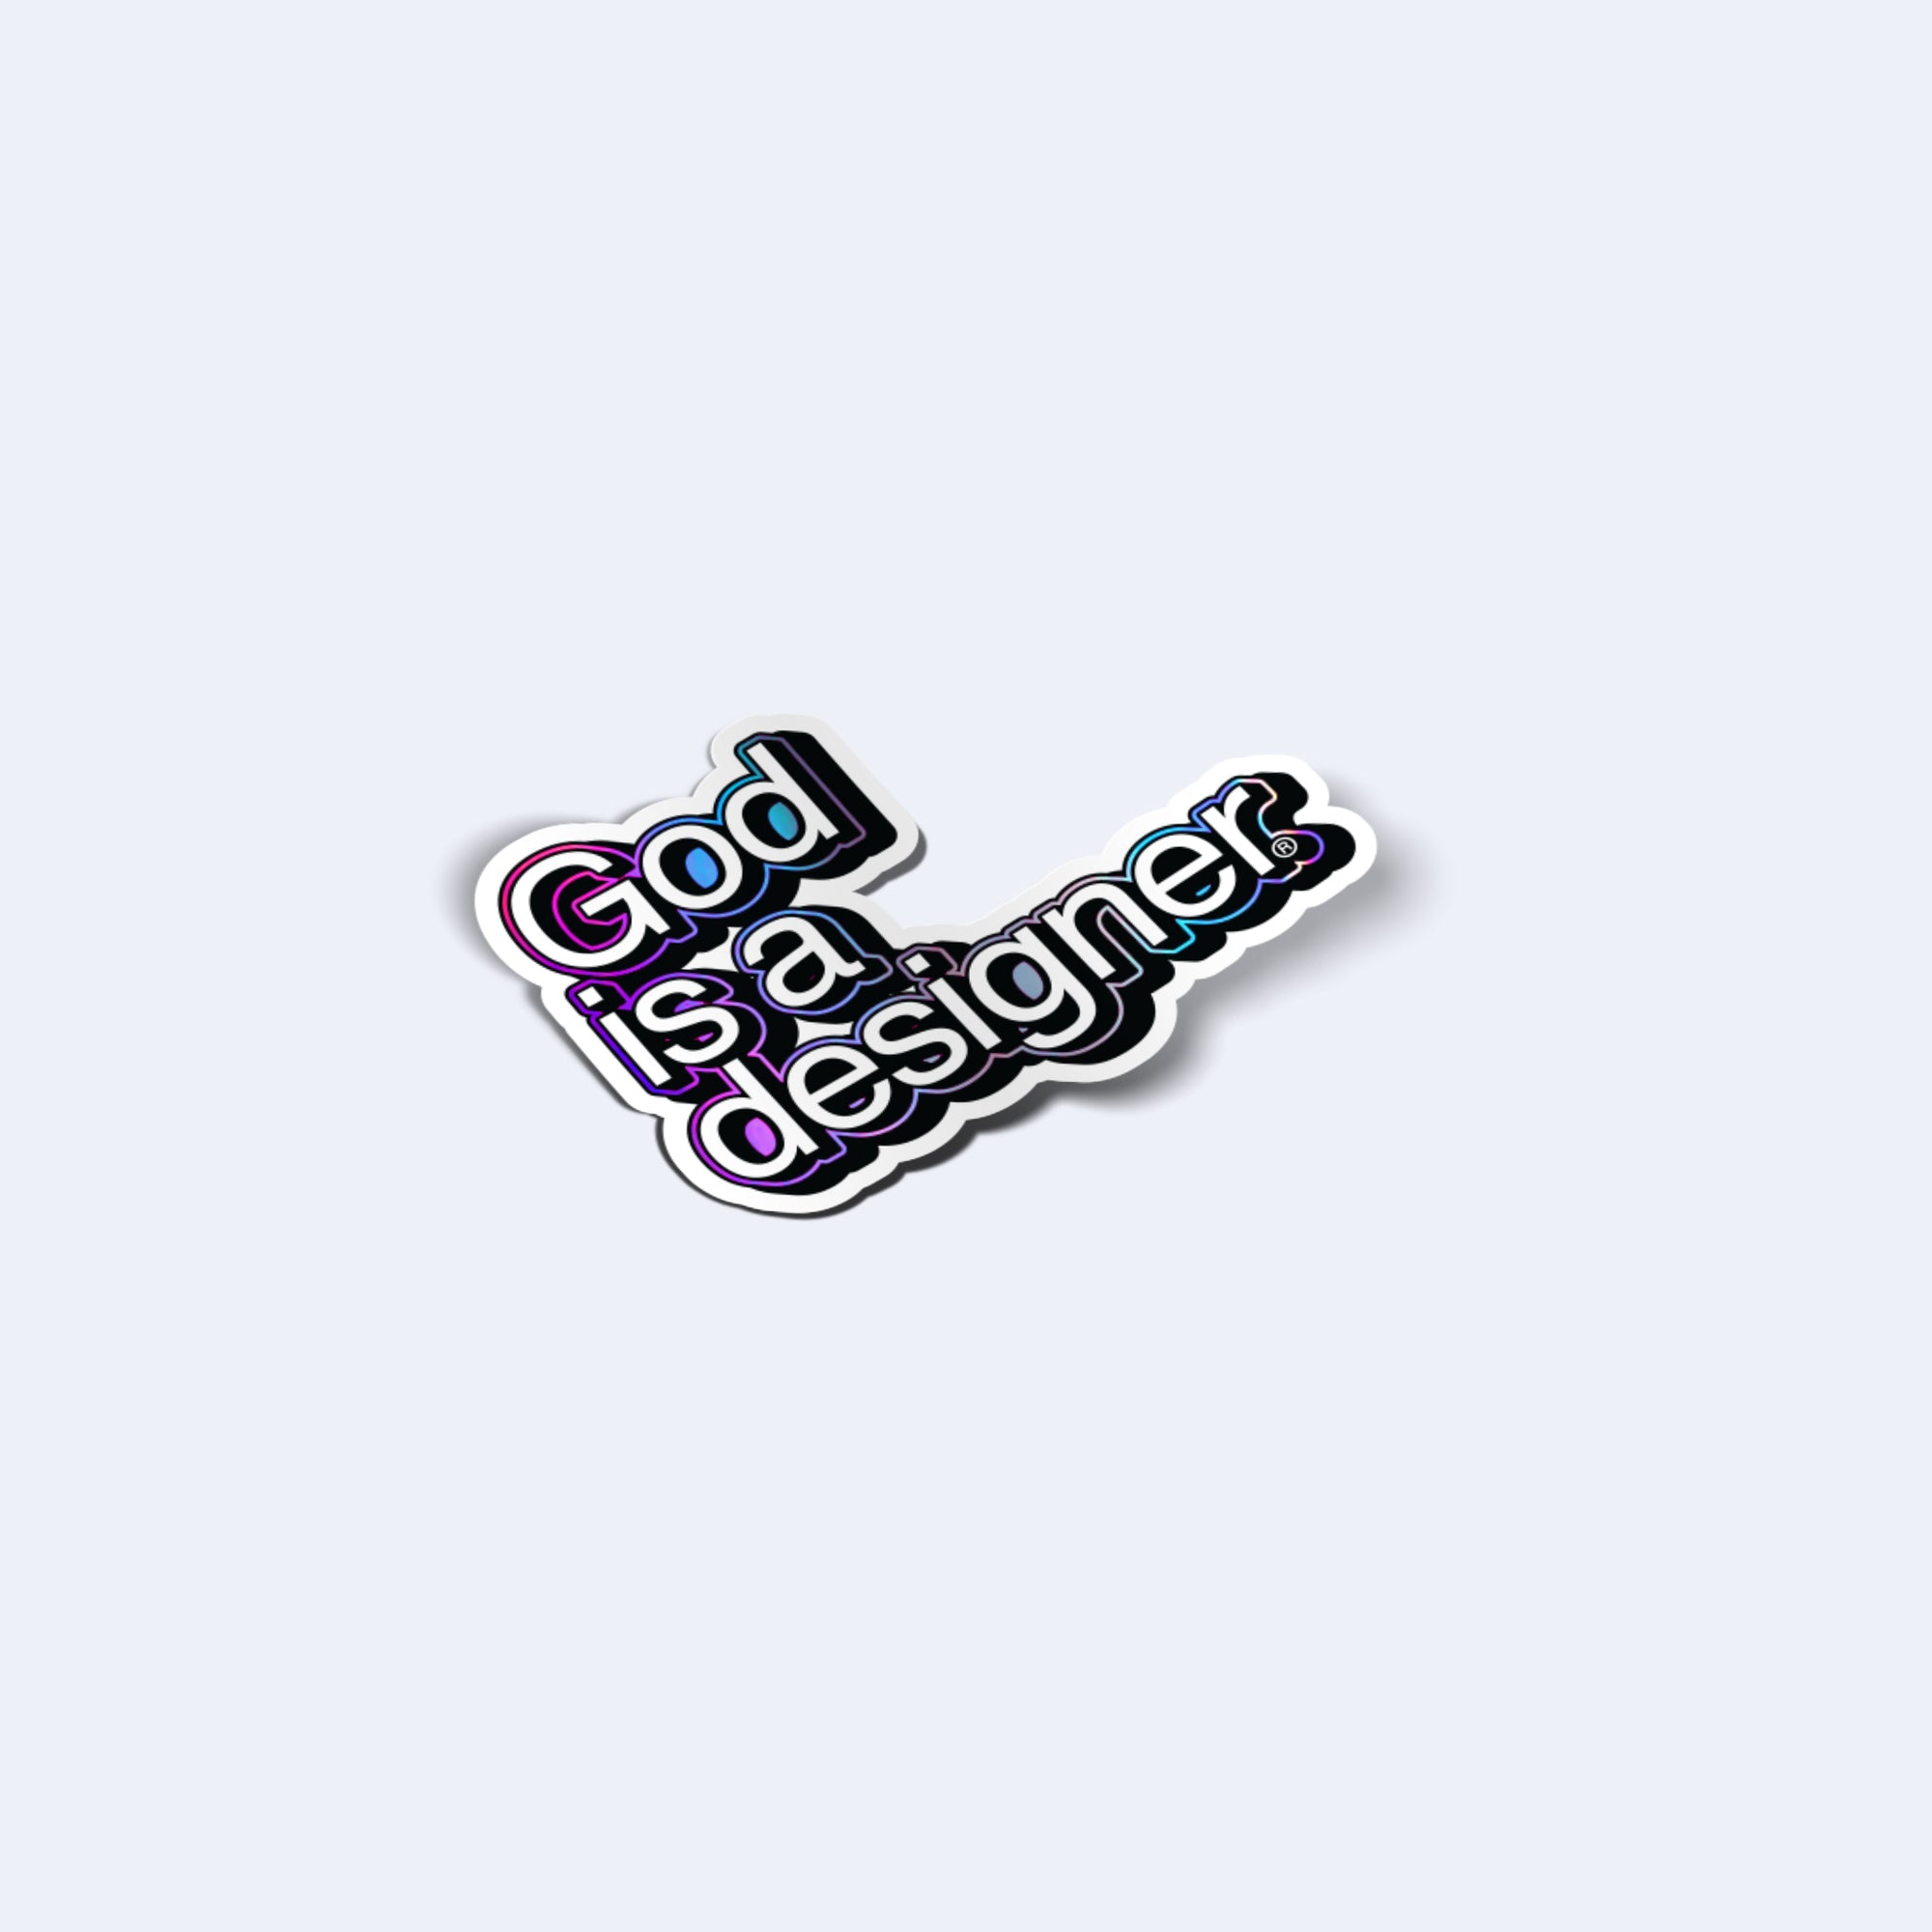 God is a designer.® Die Cut Sticker - God is a designer.®